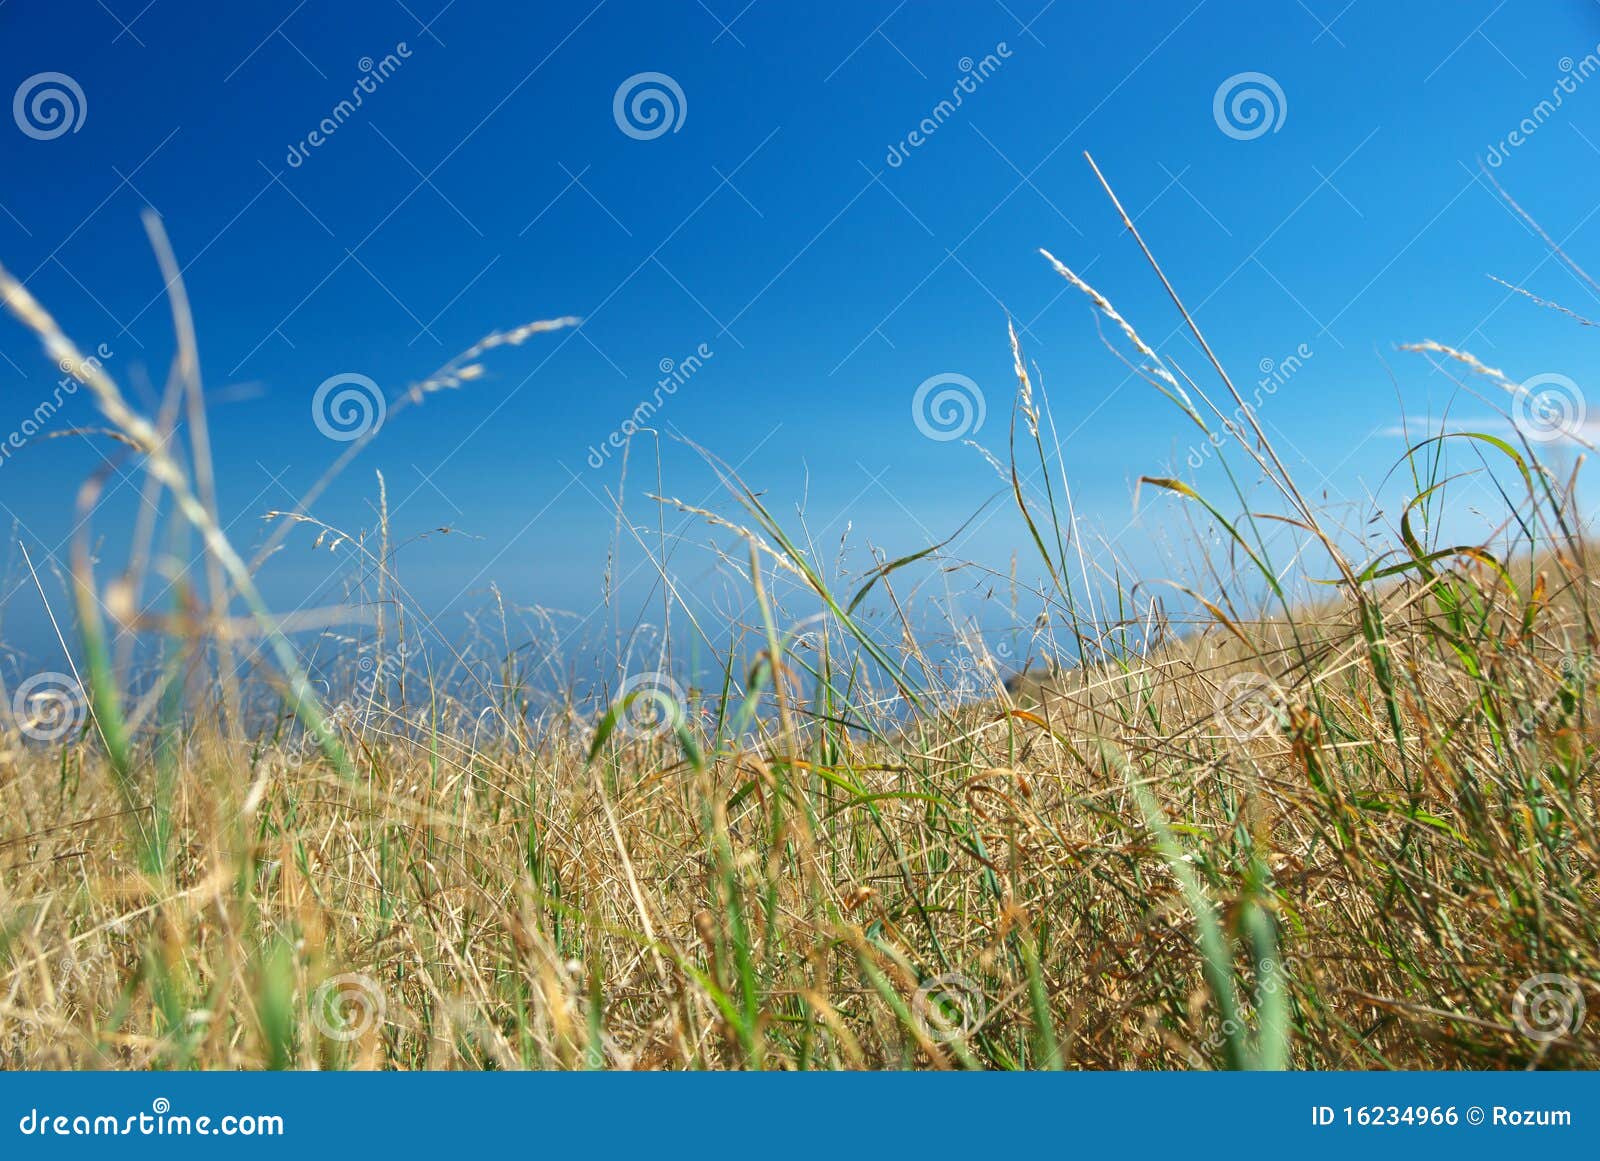 arid grass